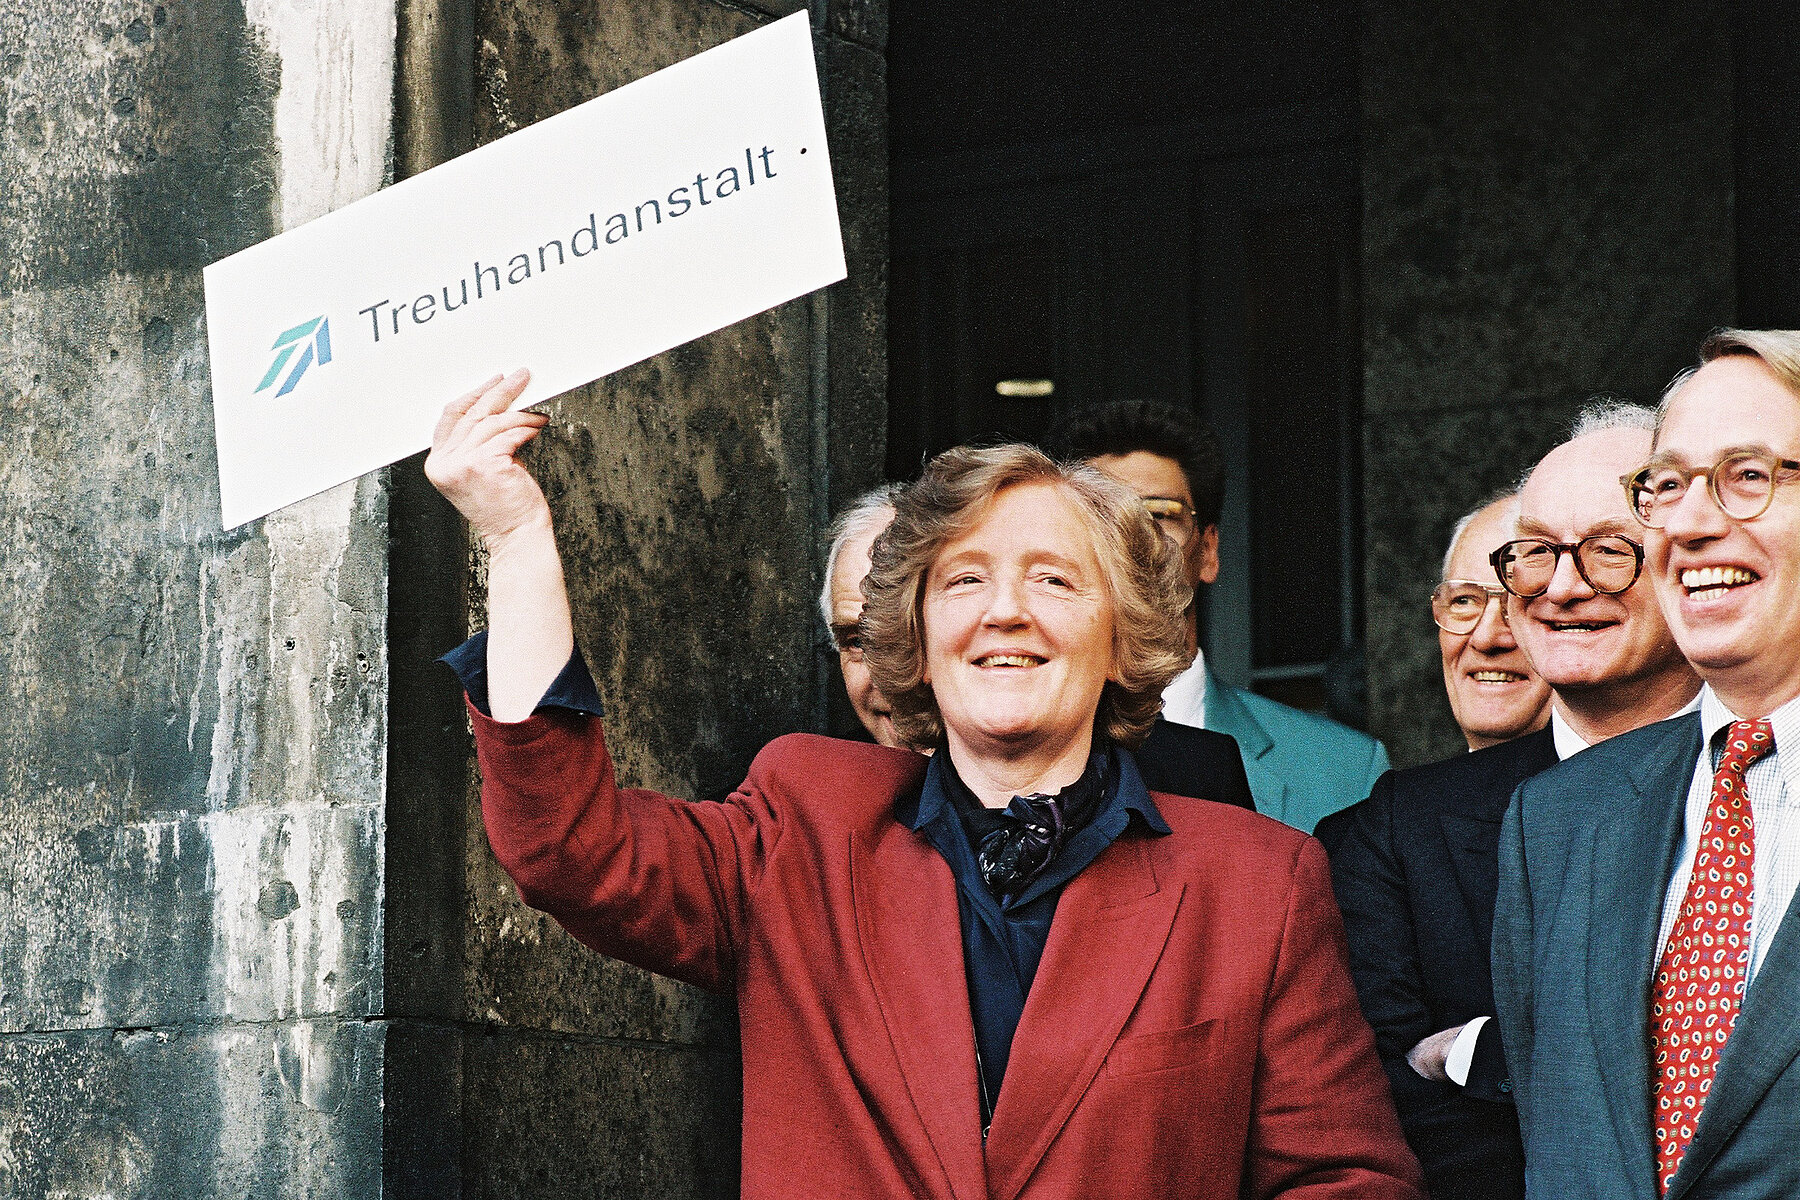 Treuhand-Präsidentin Birgit Breuel trägt einen roten Blazer. In der ihrer rechten Hand hält sie ein Schild mit der Aufschrift Treuhand. Rechts von ihr stehen Männer in Anzügen.